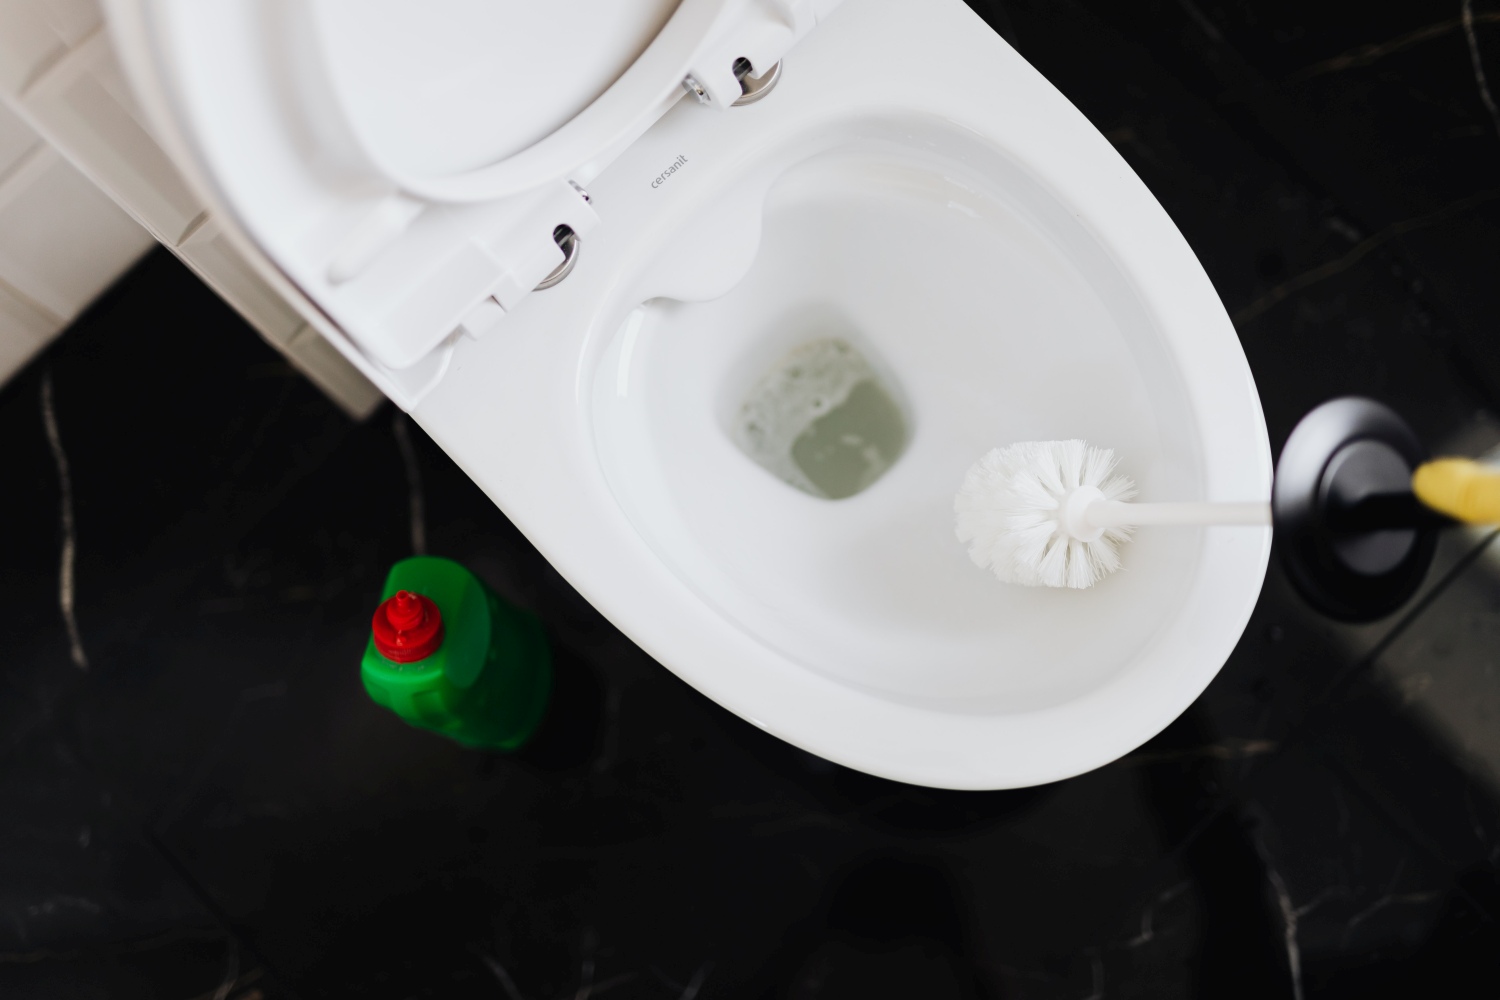 odkamienianie wc, mycie wc, jak zmyć kamień z wc